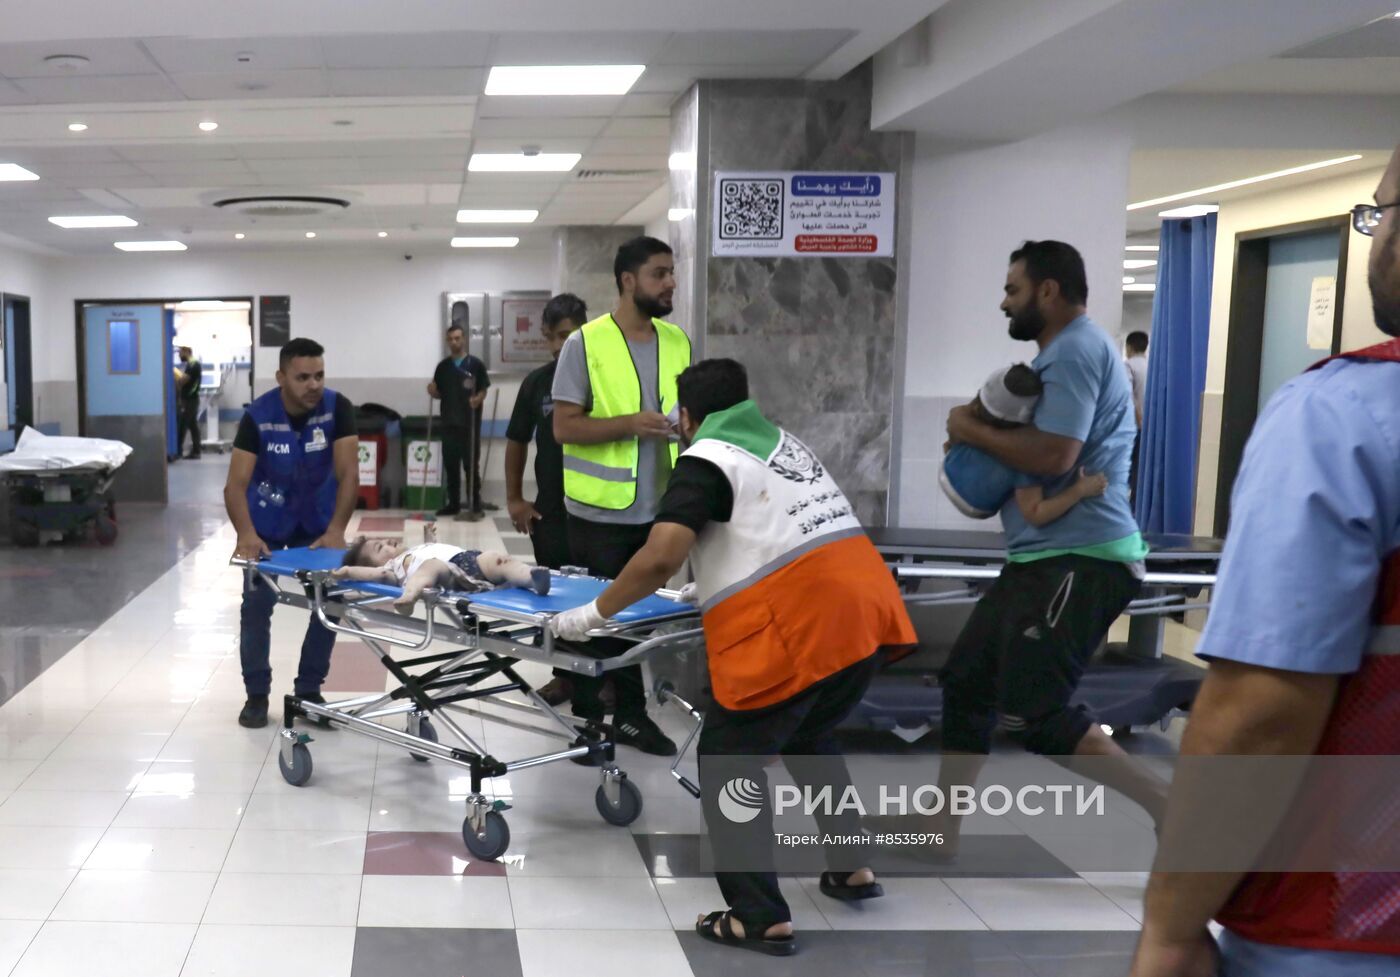 وزارة الصحة: مقتل 300 فلسطيني وإصابة 800 آخرين معظمهم أطفال ونساء خلال الـ24 ساعة الماضية